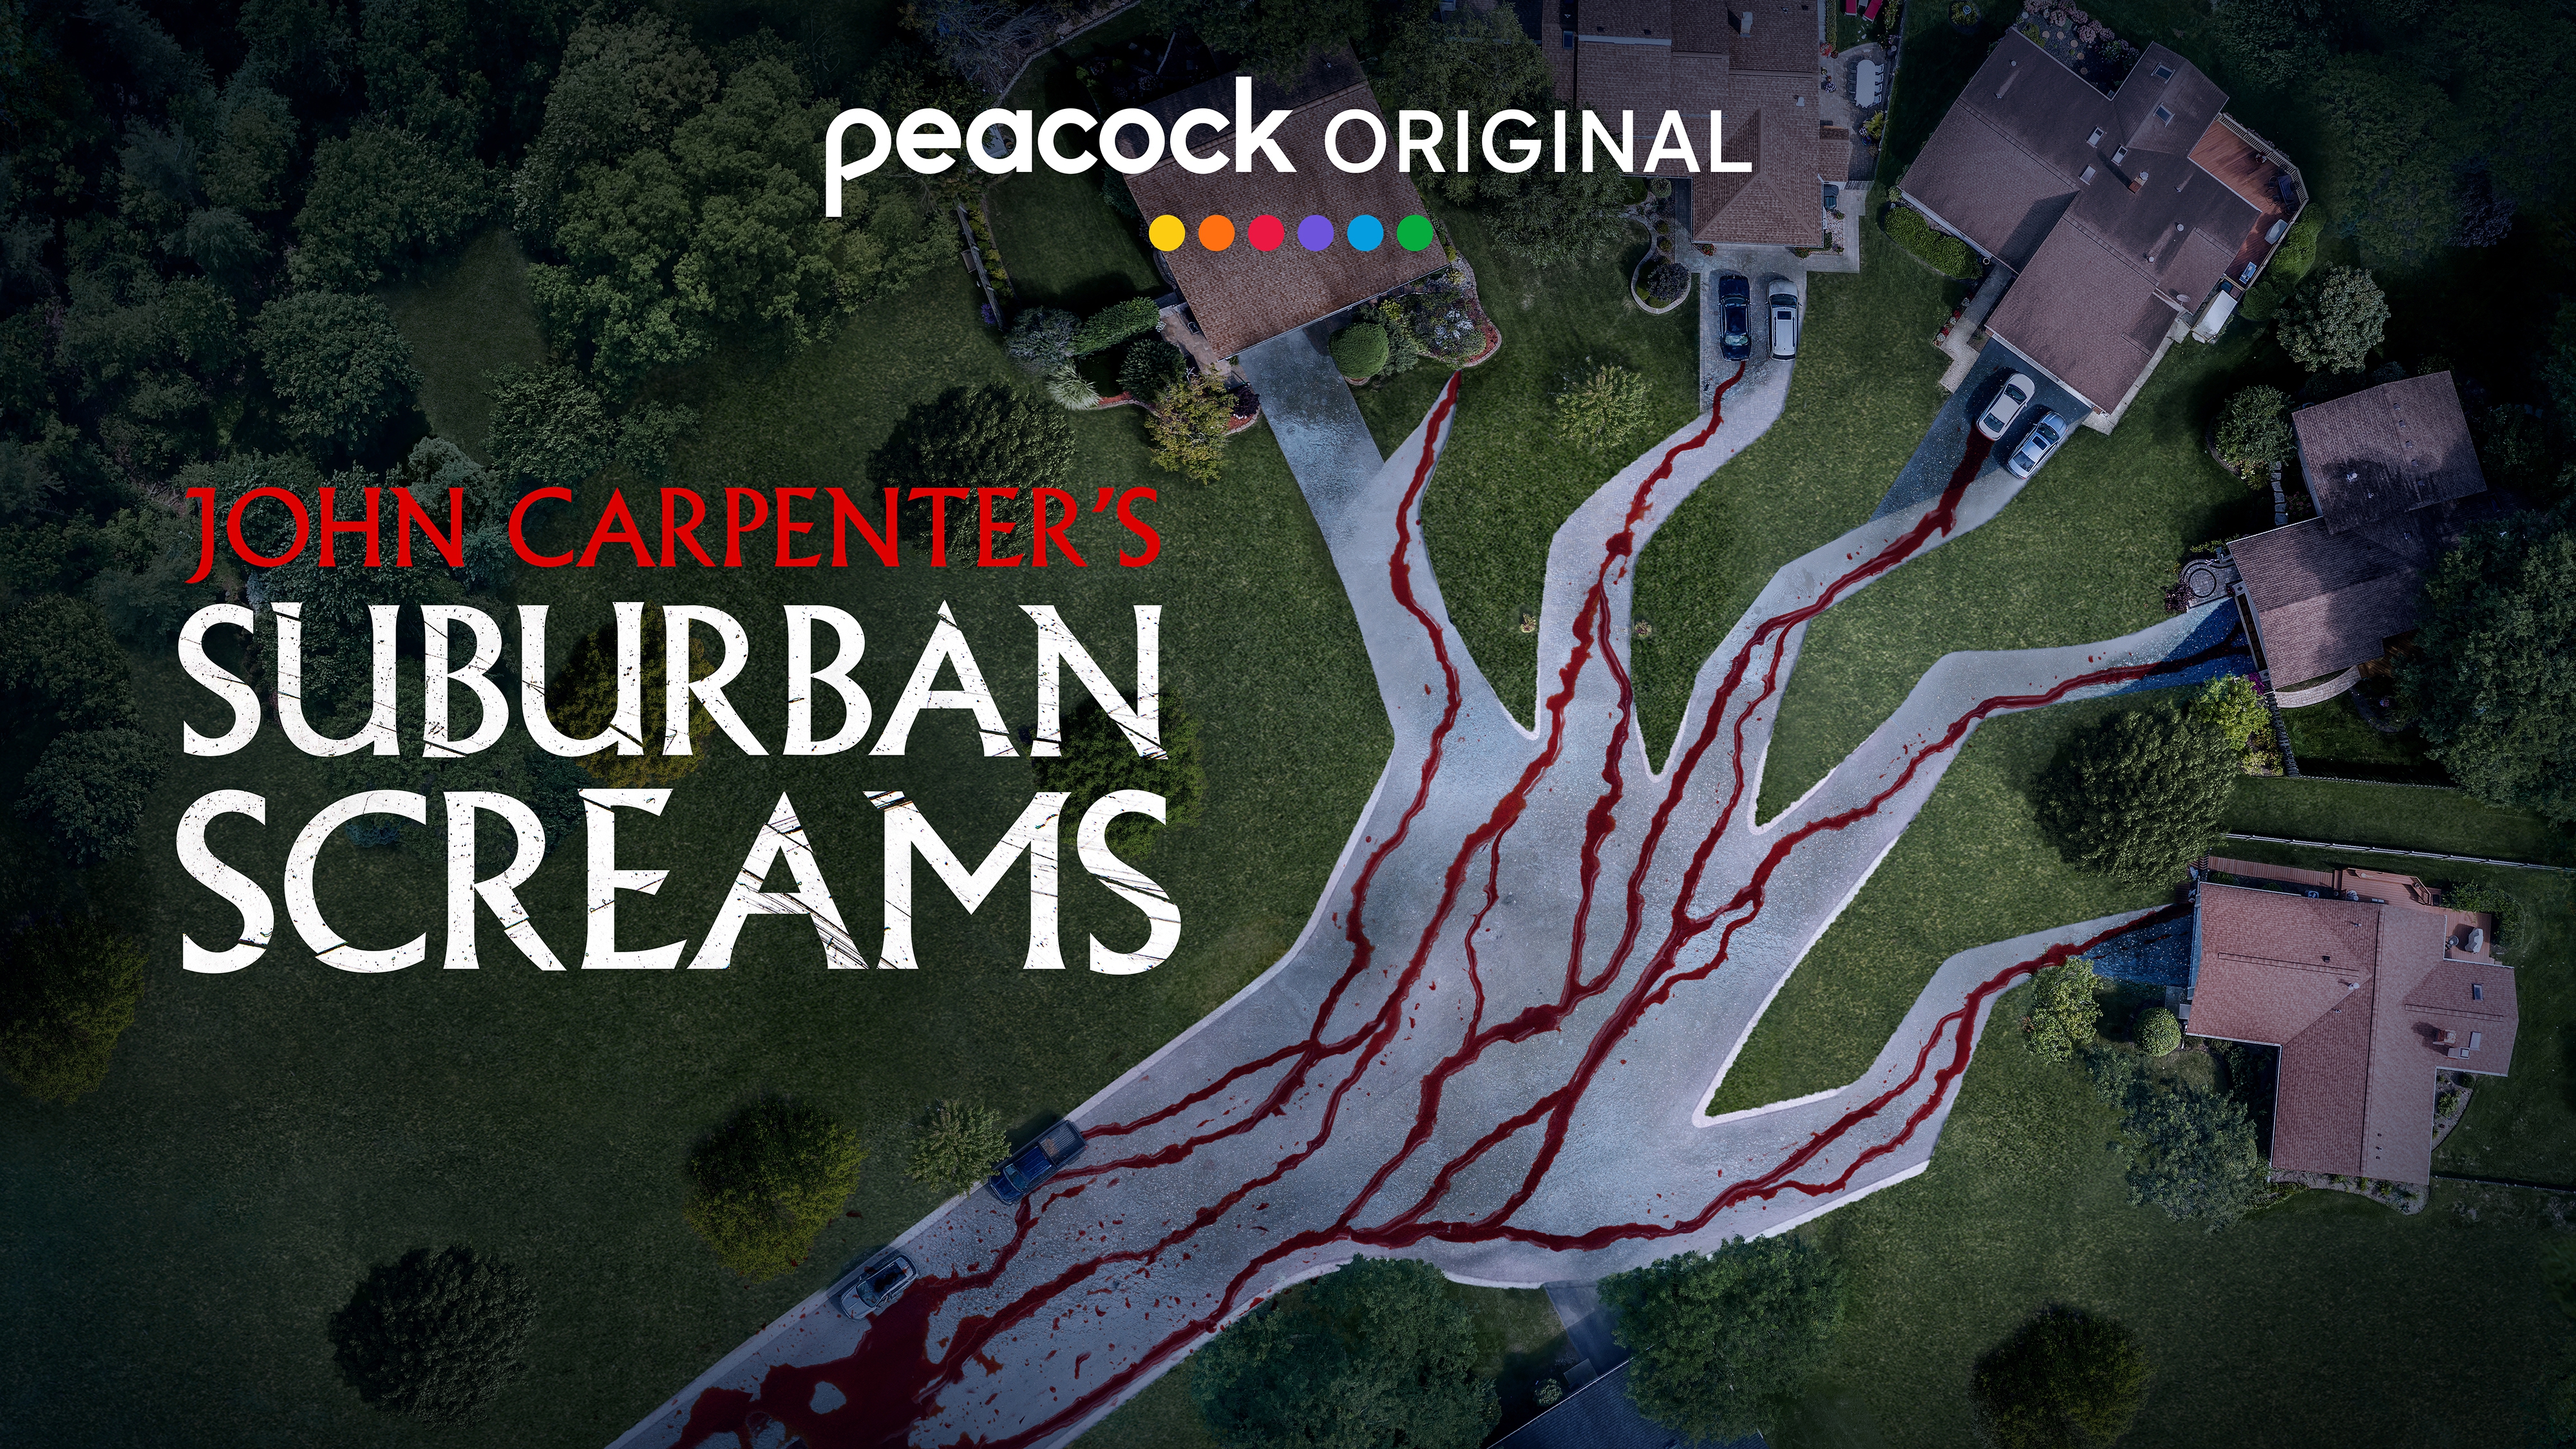 Serie tv horror John Carpenter's Suburban Screams: trama e uscita